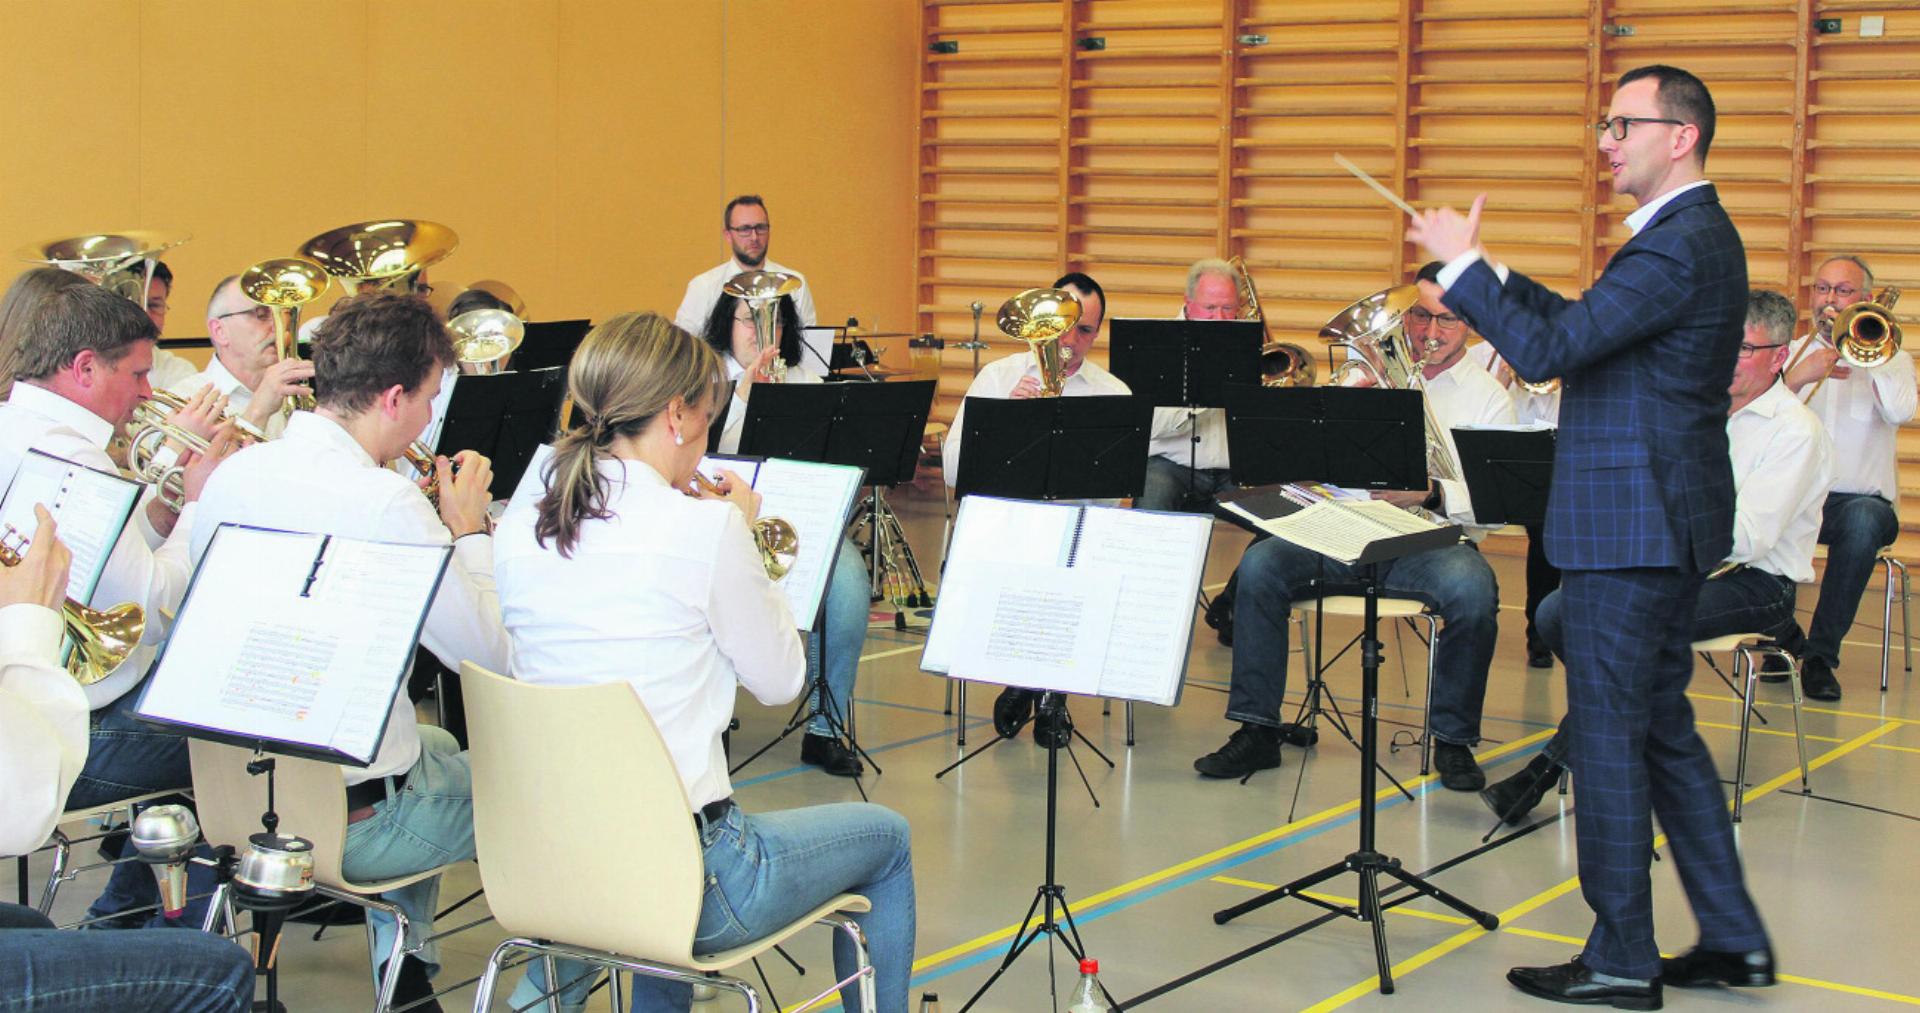 Dirigent Silvan Zemp führte die rund 20 Musikantinnen und Musikanten souverän durch das abwechslungsreiche Konzertprogramm. Foto: dv